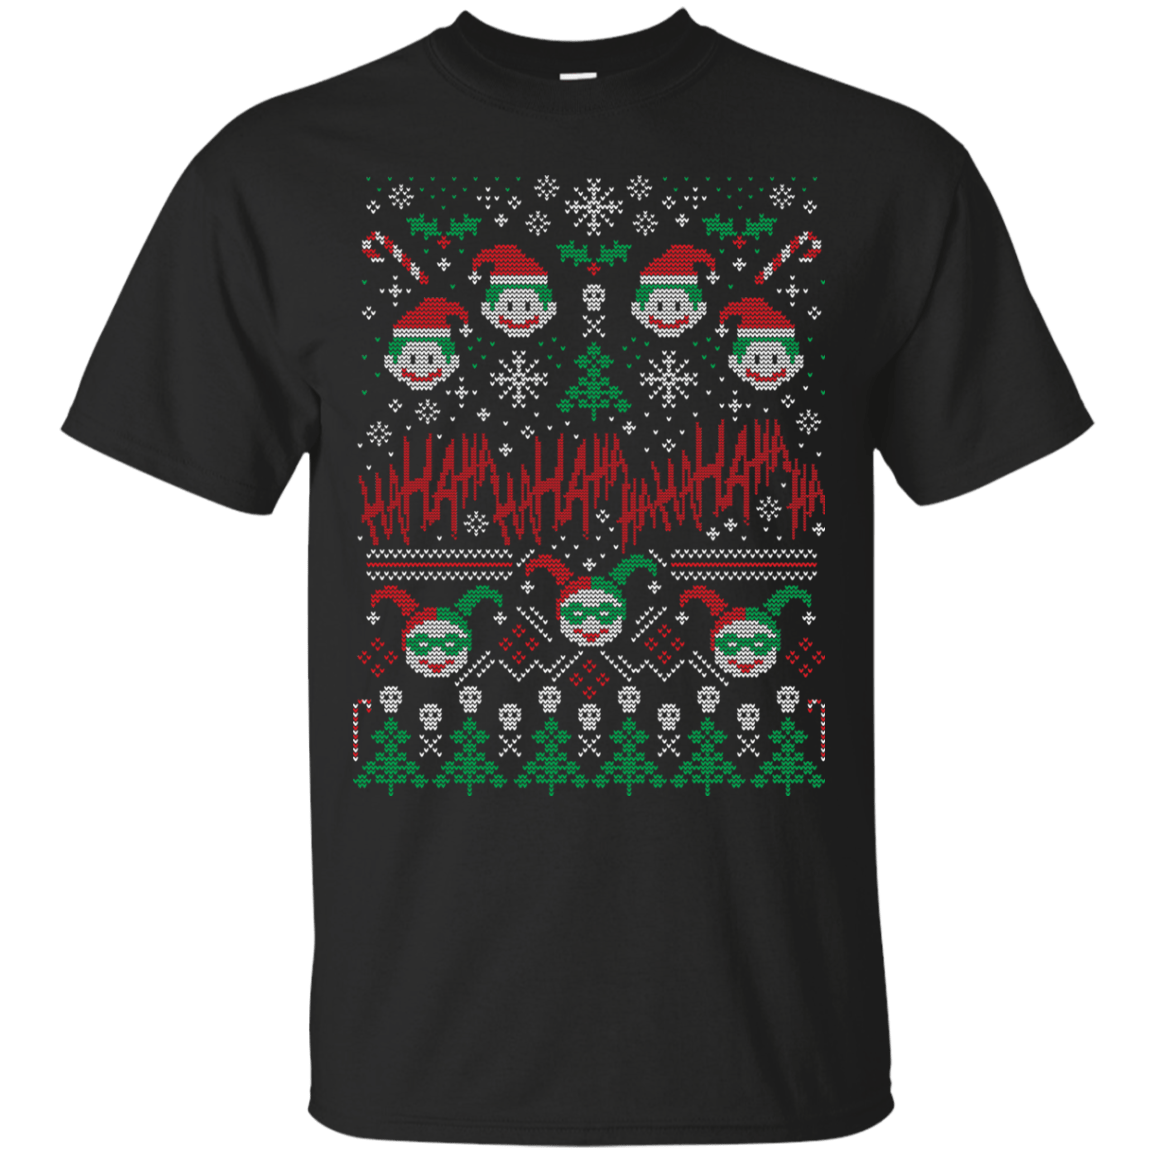 T-Shirts Black / Small HaHa Holidays T-Shirt